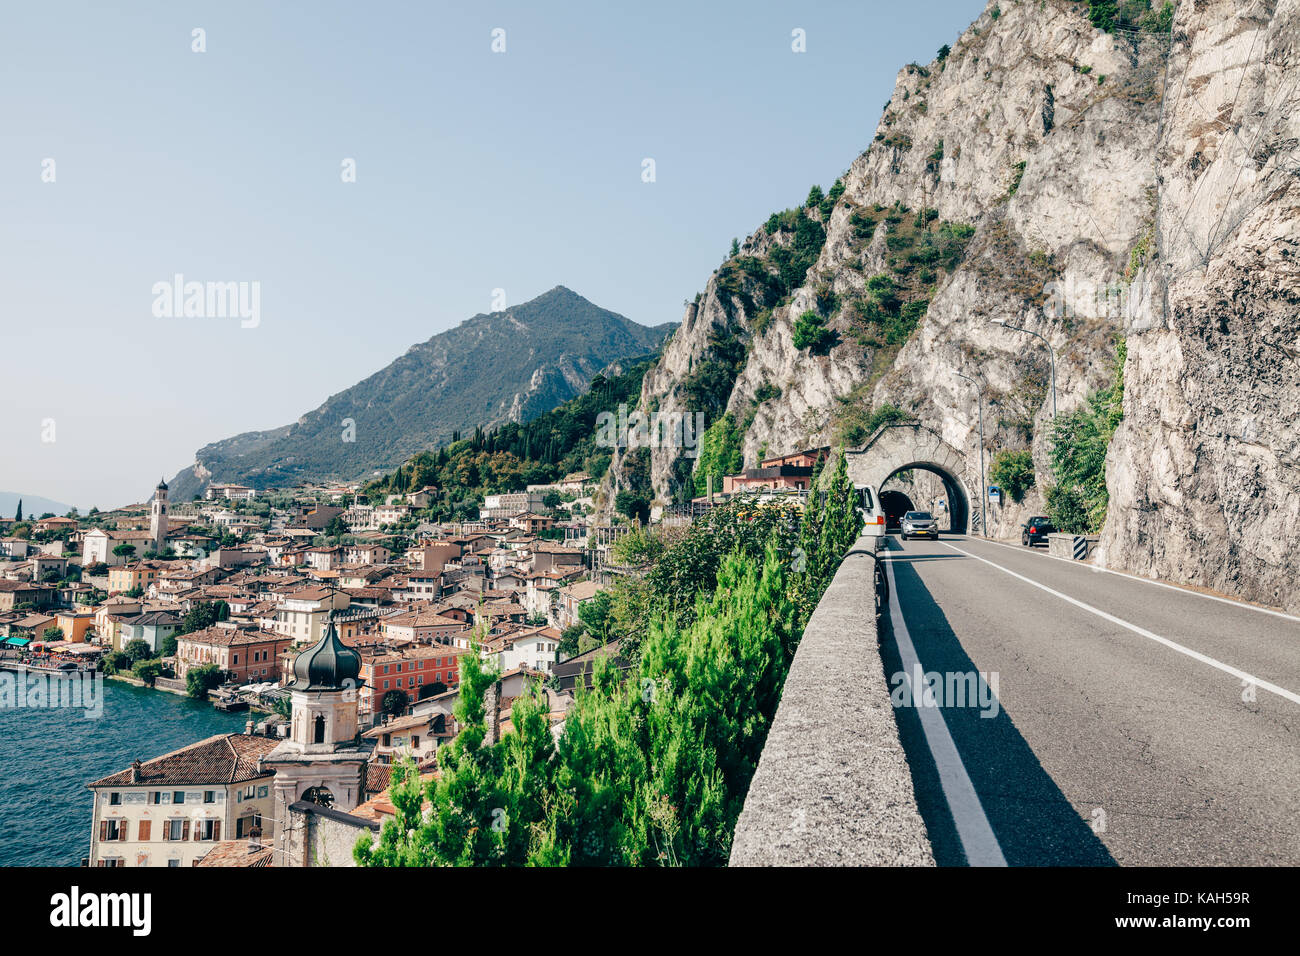 Landschaftlich schöne Strecke am Gardasee und schönen Dorf Limone sul Garda,  Italien. Reisen Hintergrund Stockfotografie - Alamy